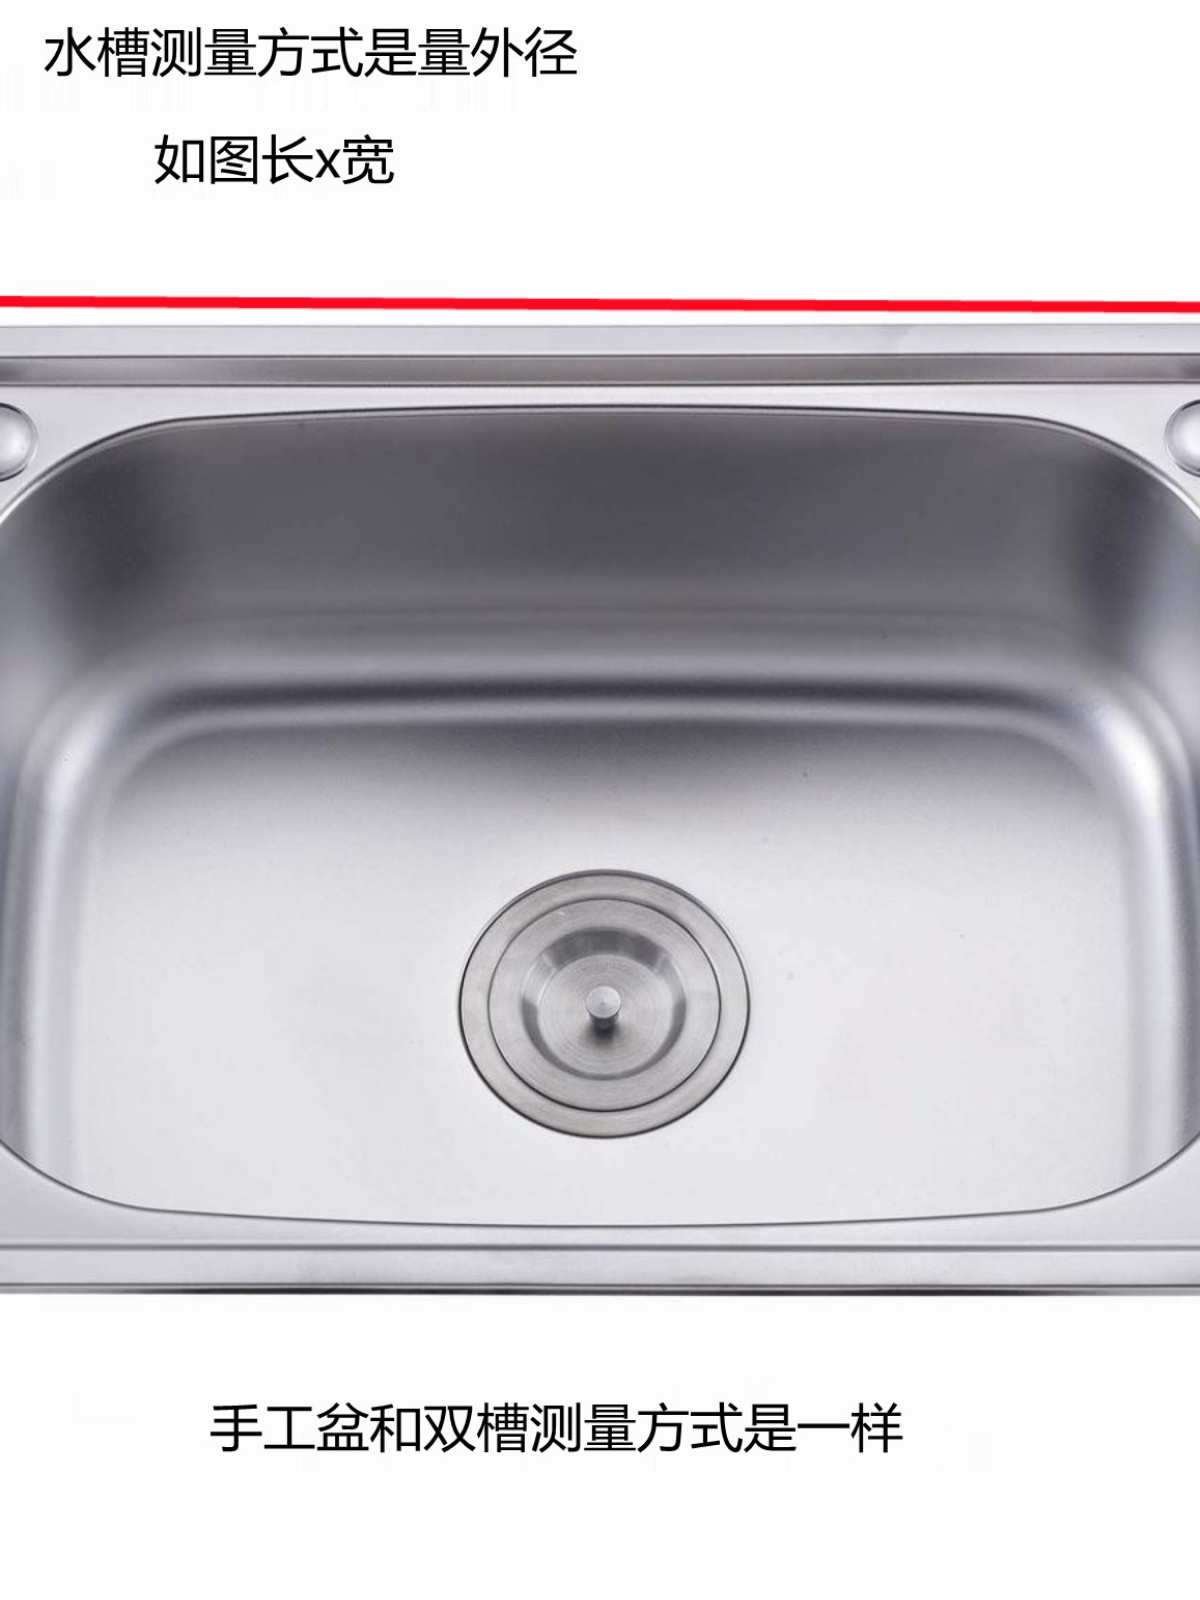 新品双槽不锈钢单槽水槽带支架洗碗池加厚厨房洗菜盆落地